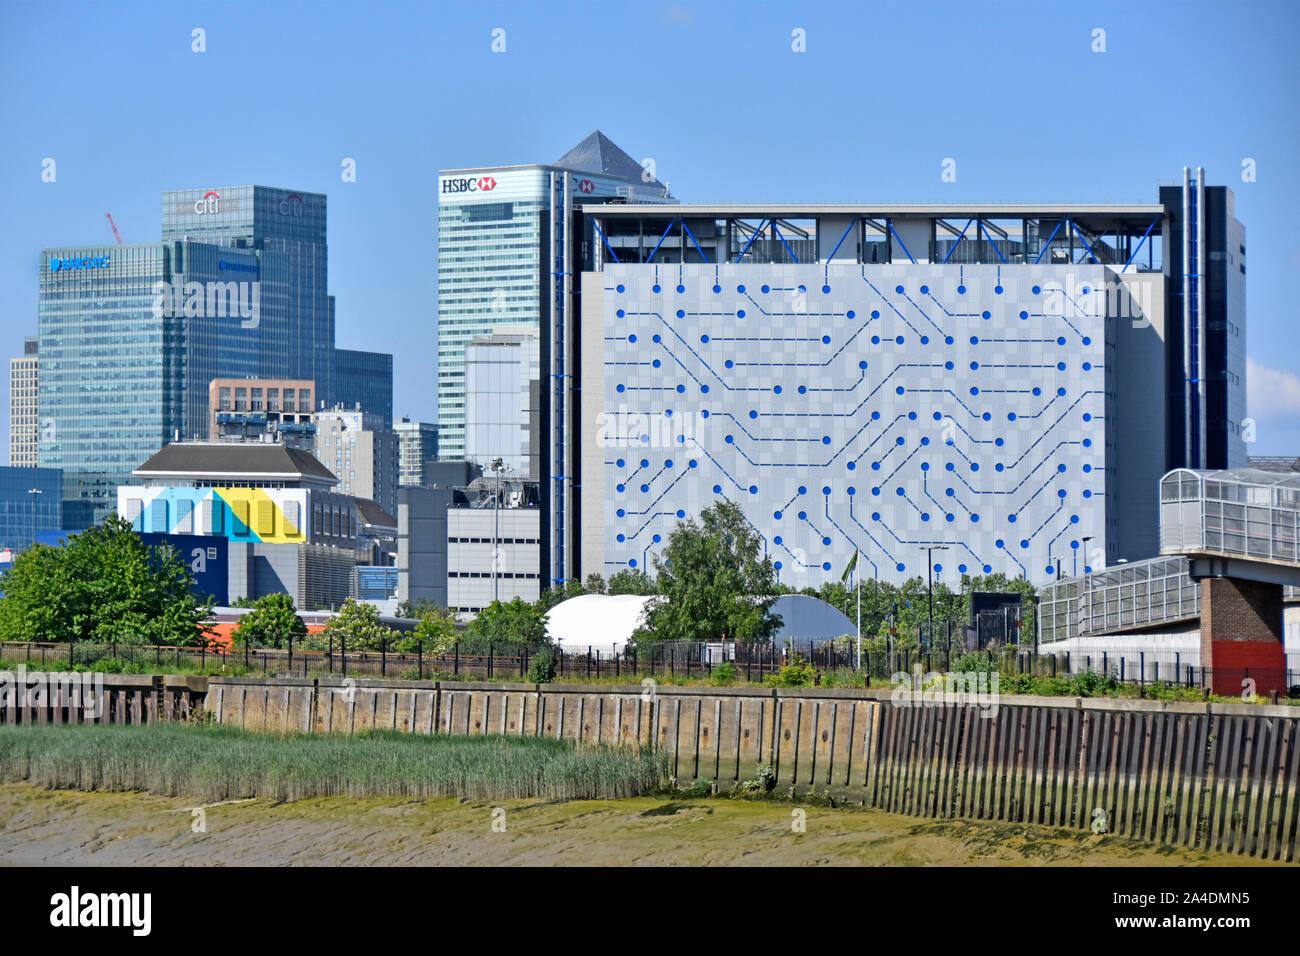 Paysage urbain à partir de la rivière Lea façade moderne de centre de données Telehouse bâtiment et gratte-ciel du quartier financier de Canary Wharf est de Londres Angleterre Royaume-uni Banque D'Images